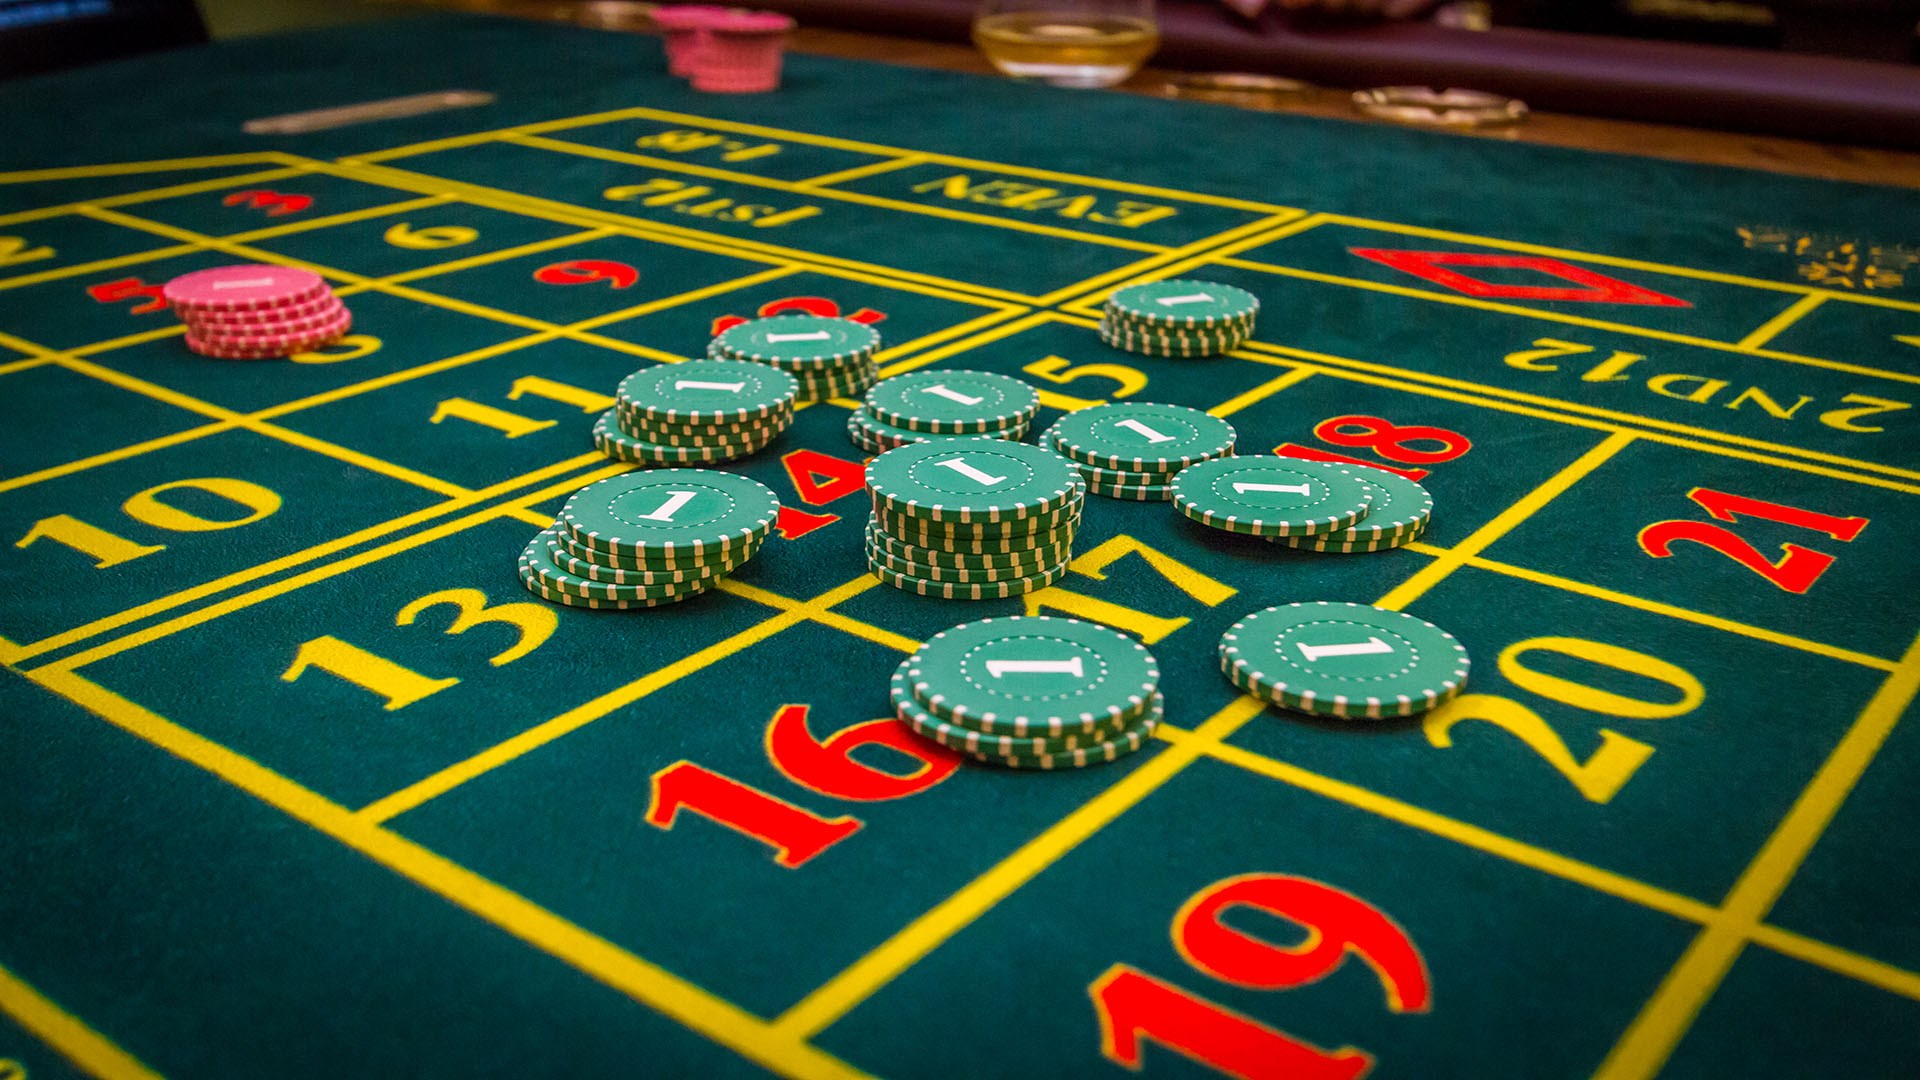 Best online casino game to win money